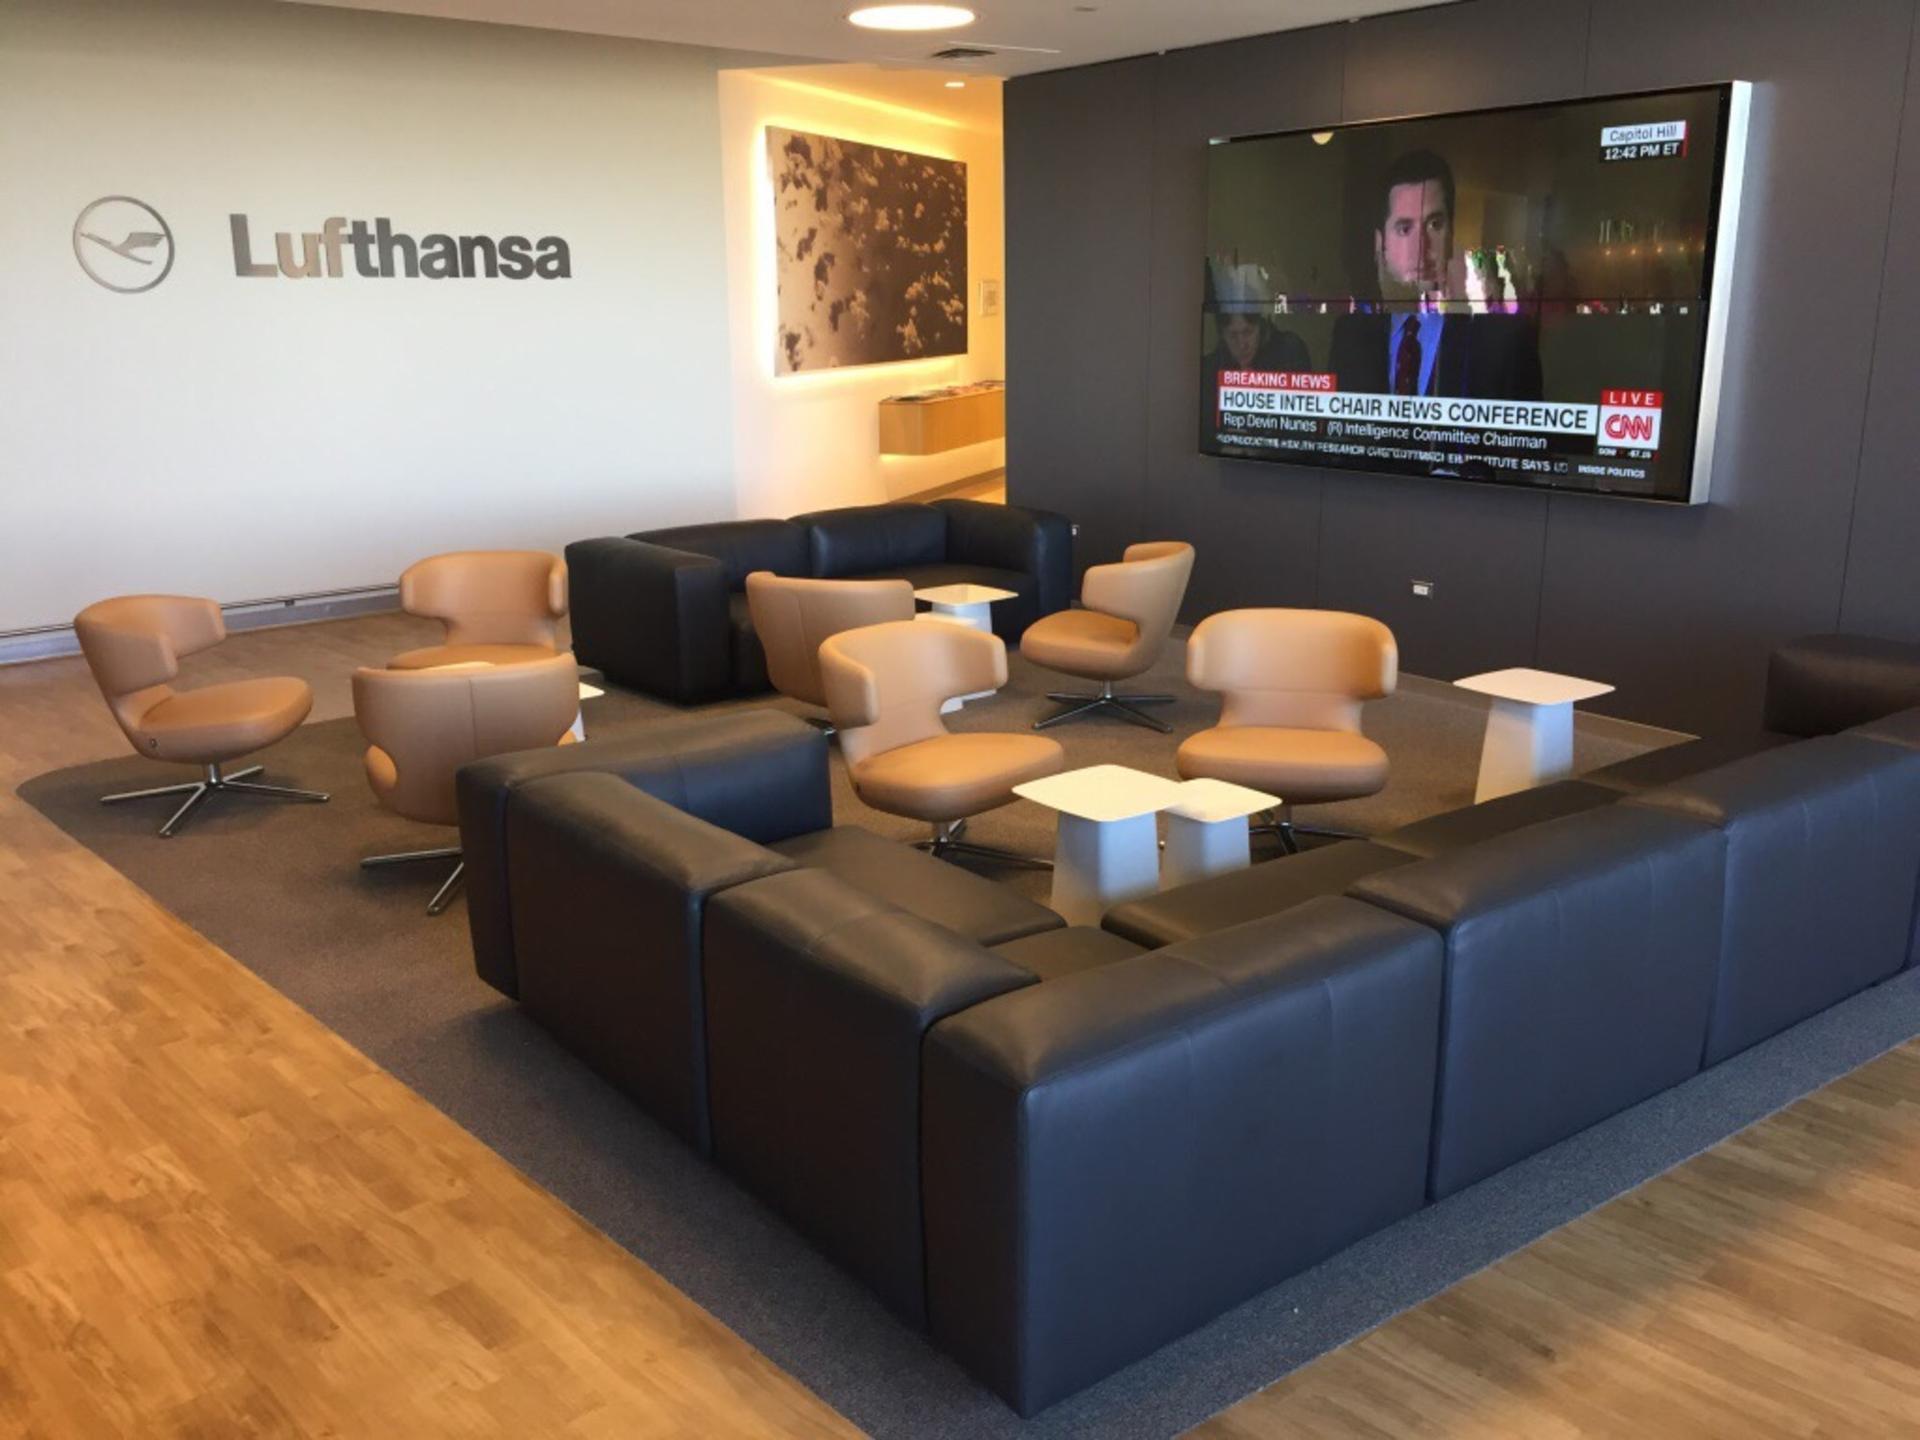 Lufthansa Lounge image 10 of 16